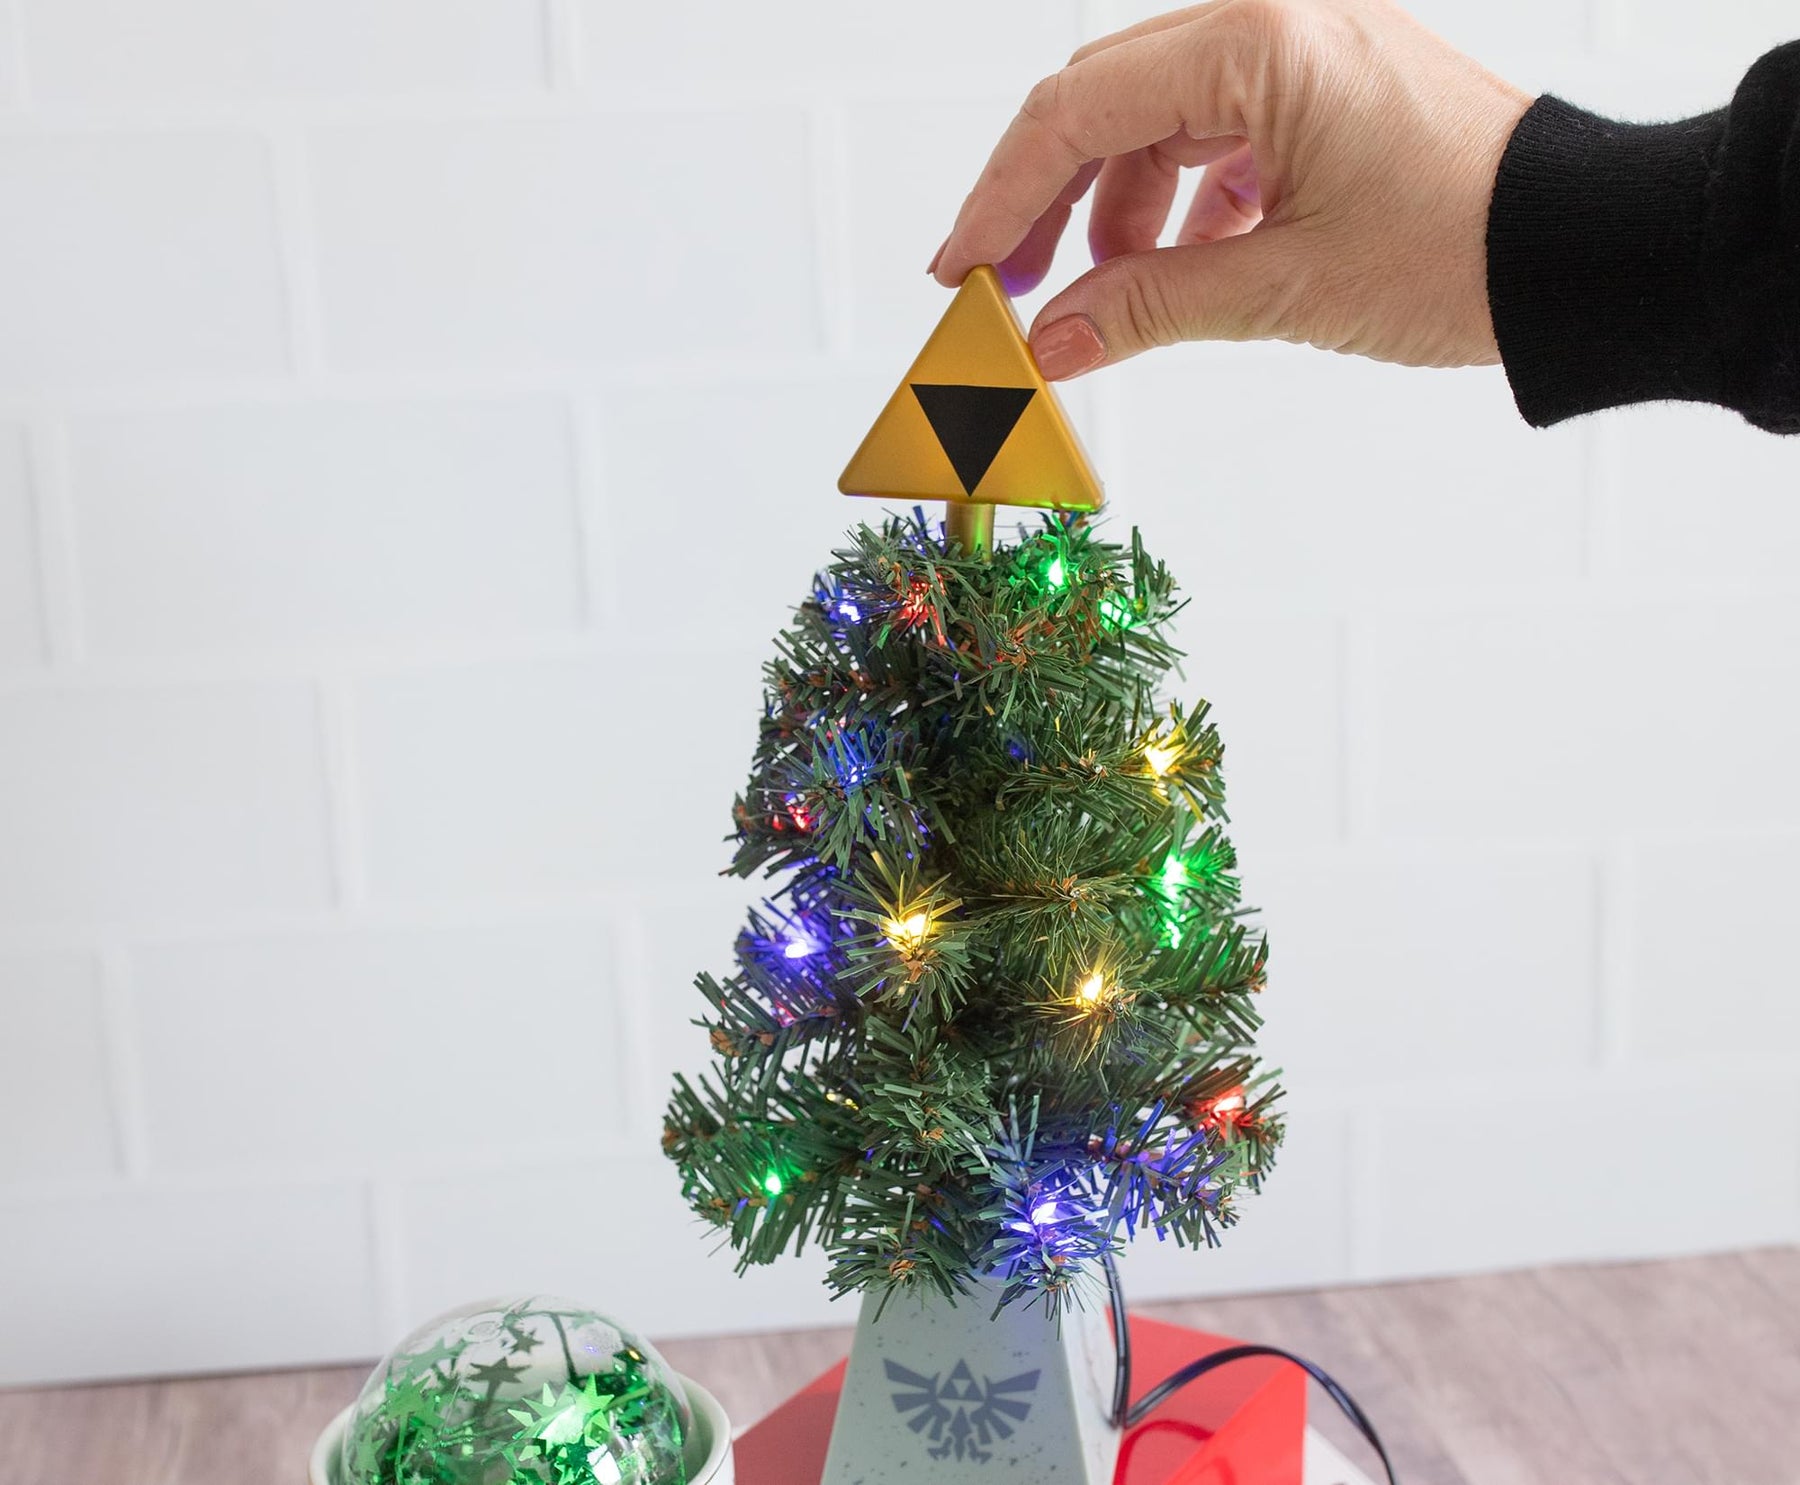 The Legend of Zelda Triforce LED USB-Powered Light-Up Desktop Holiday Tree